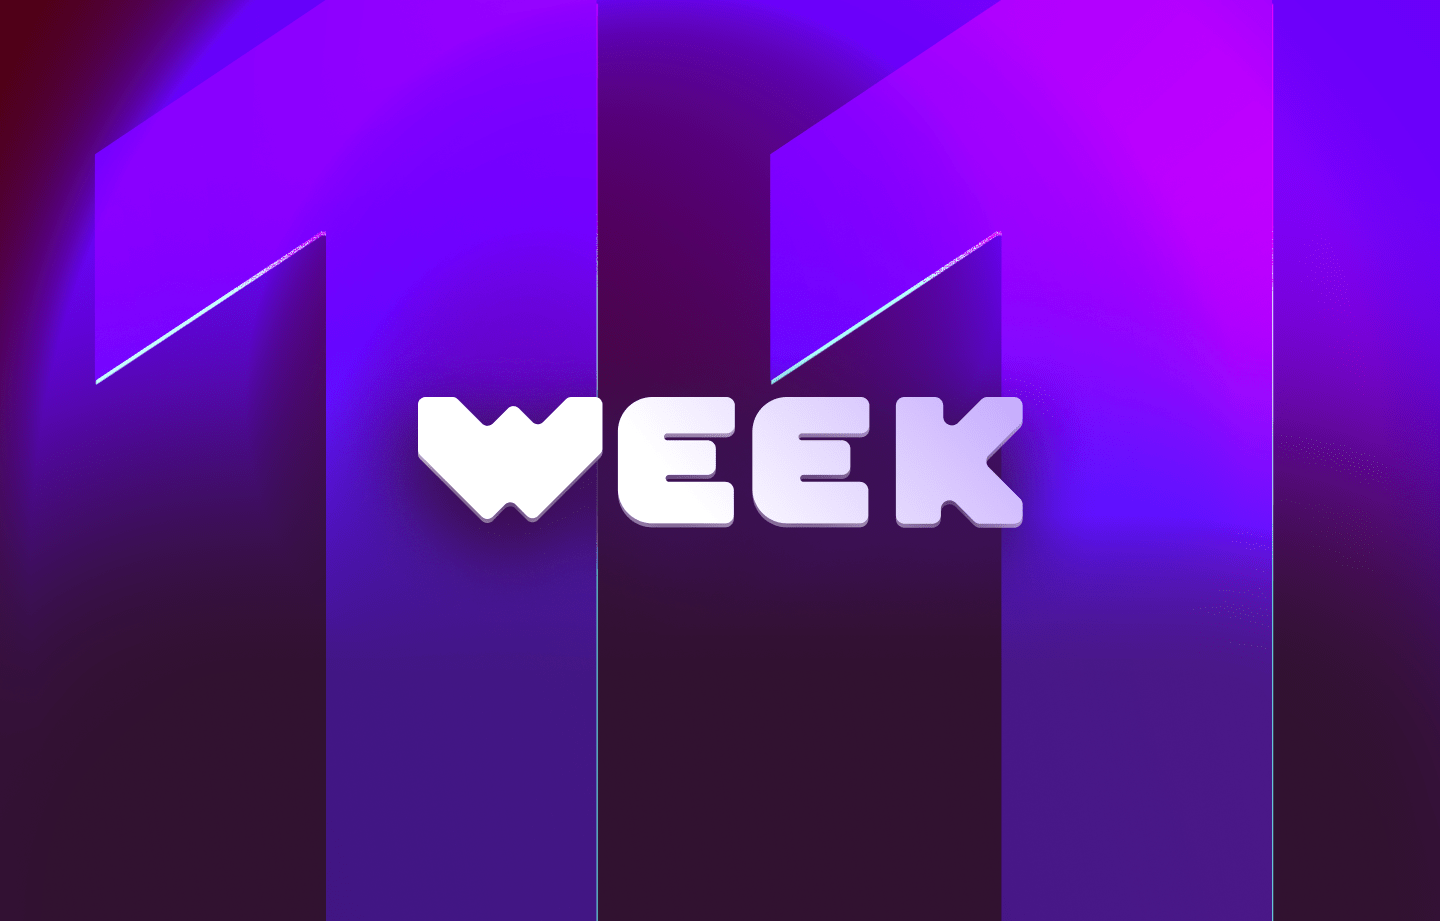 This week in web3 #11